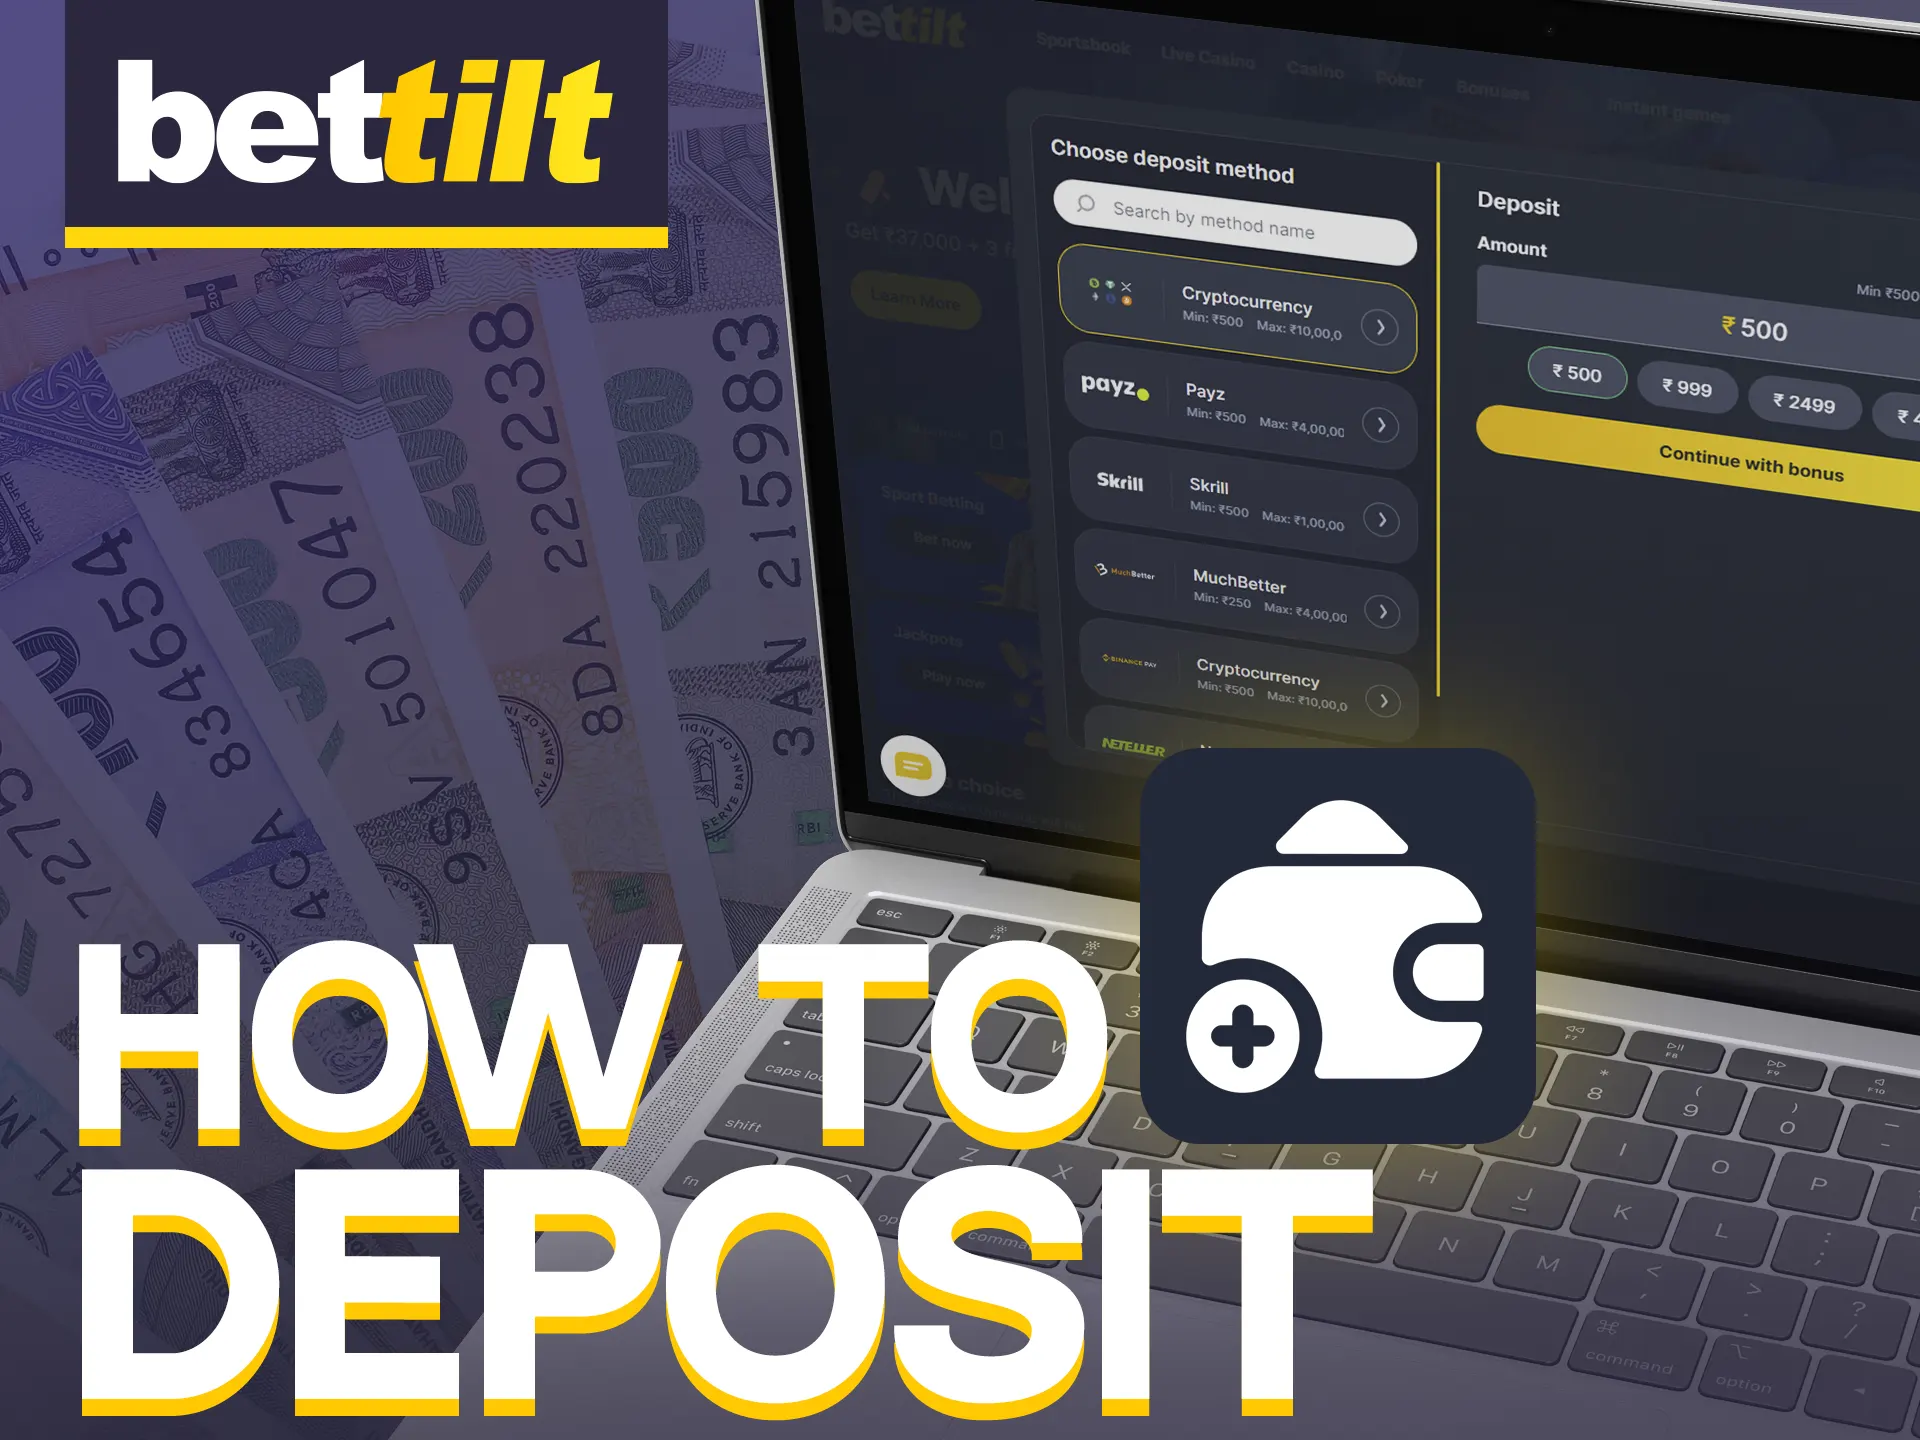 Deposit money easily on Bettilt's website.